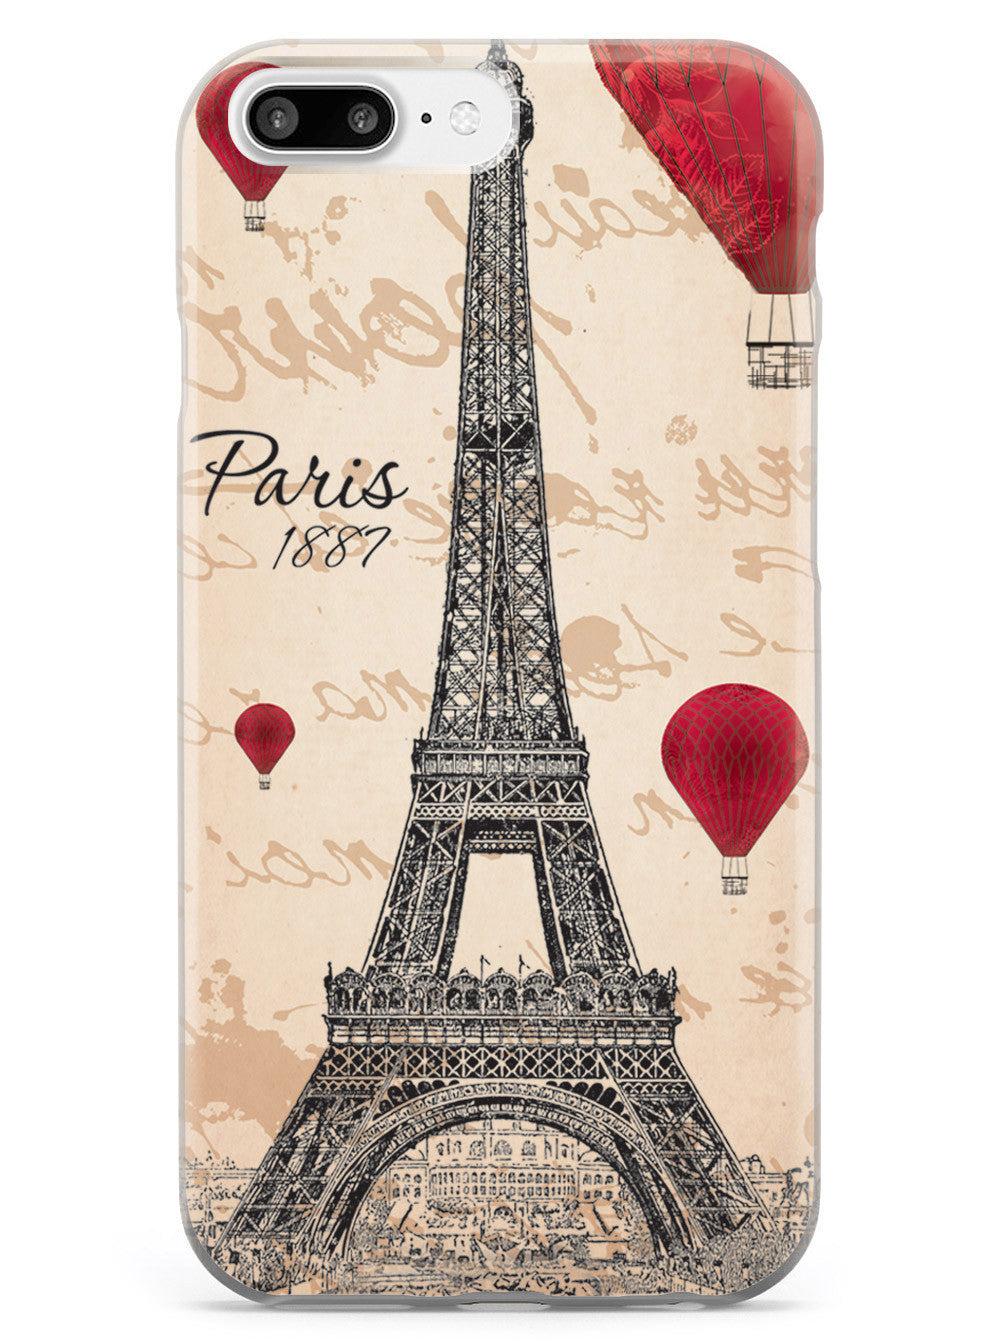 Paris Eiffel Tower 1887 Case